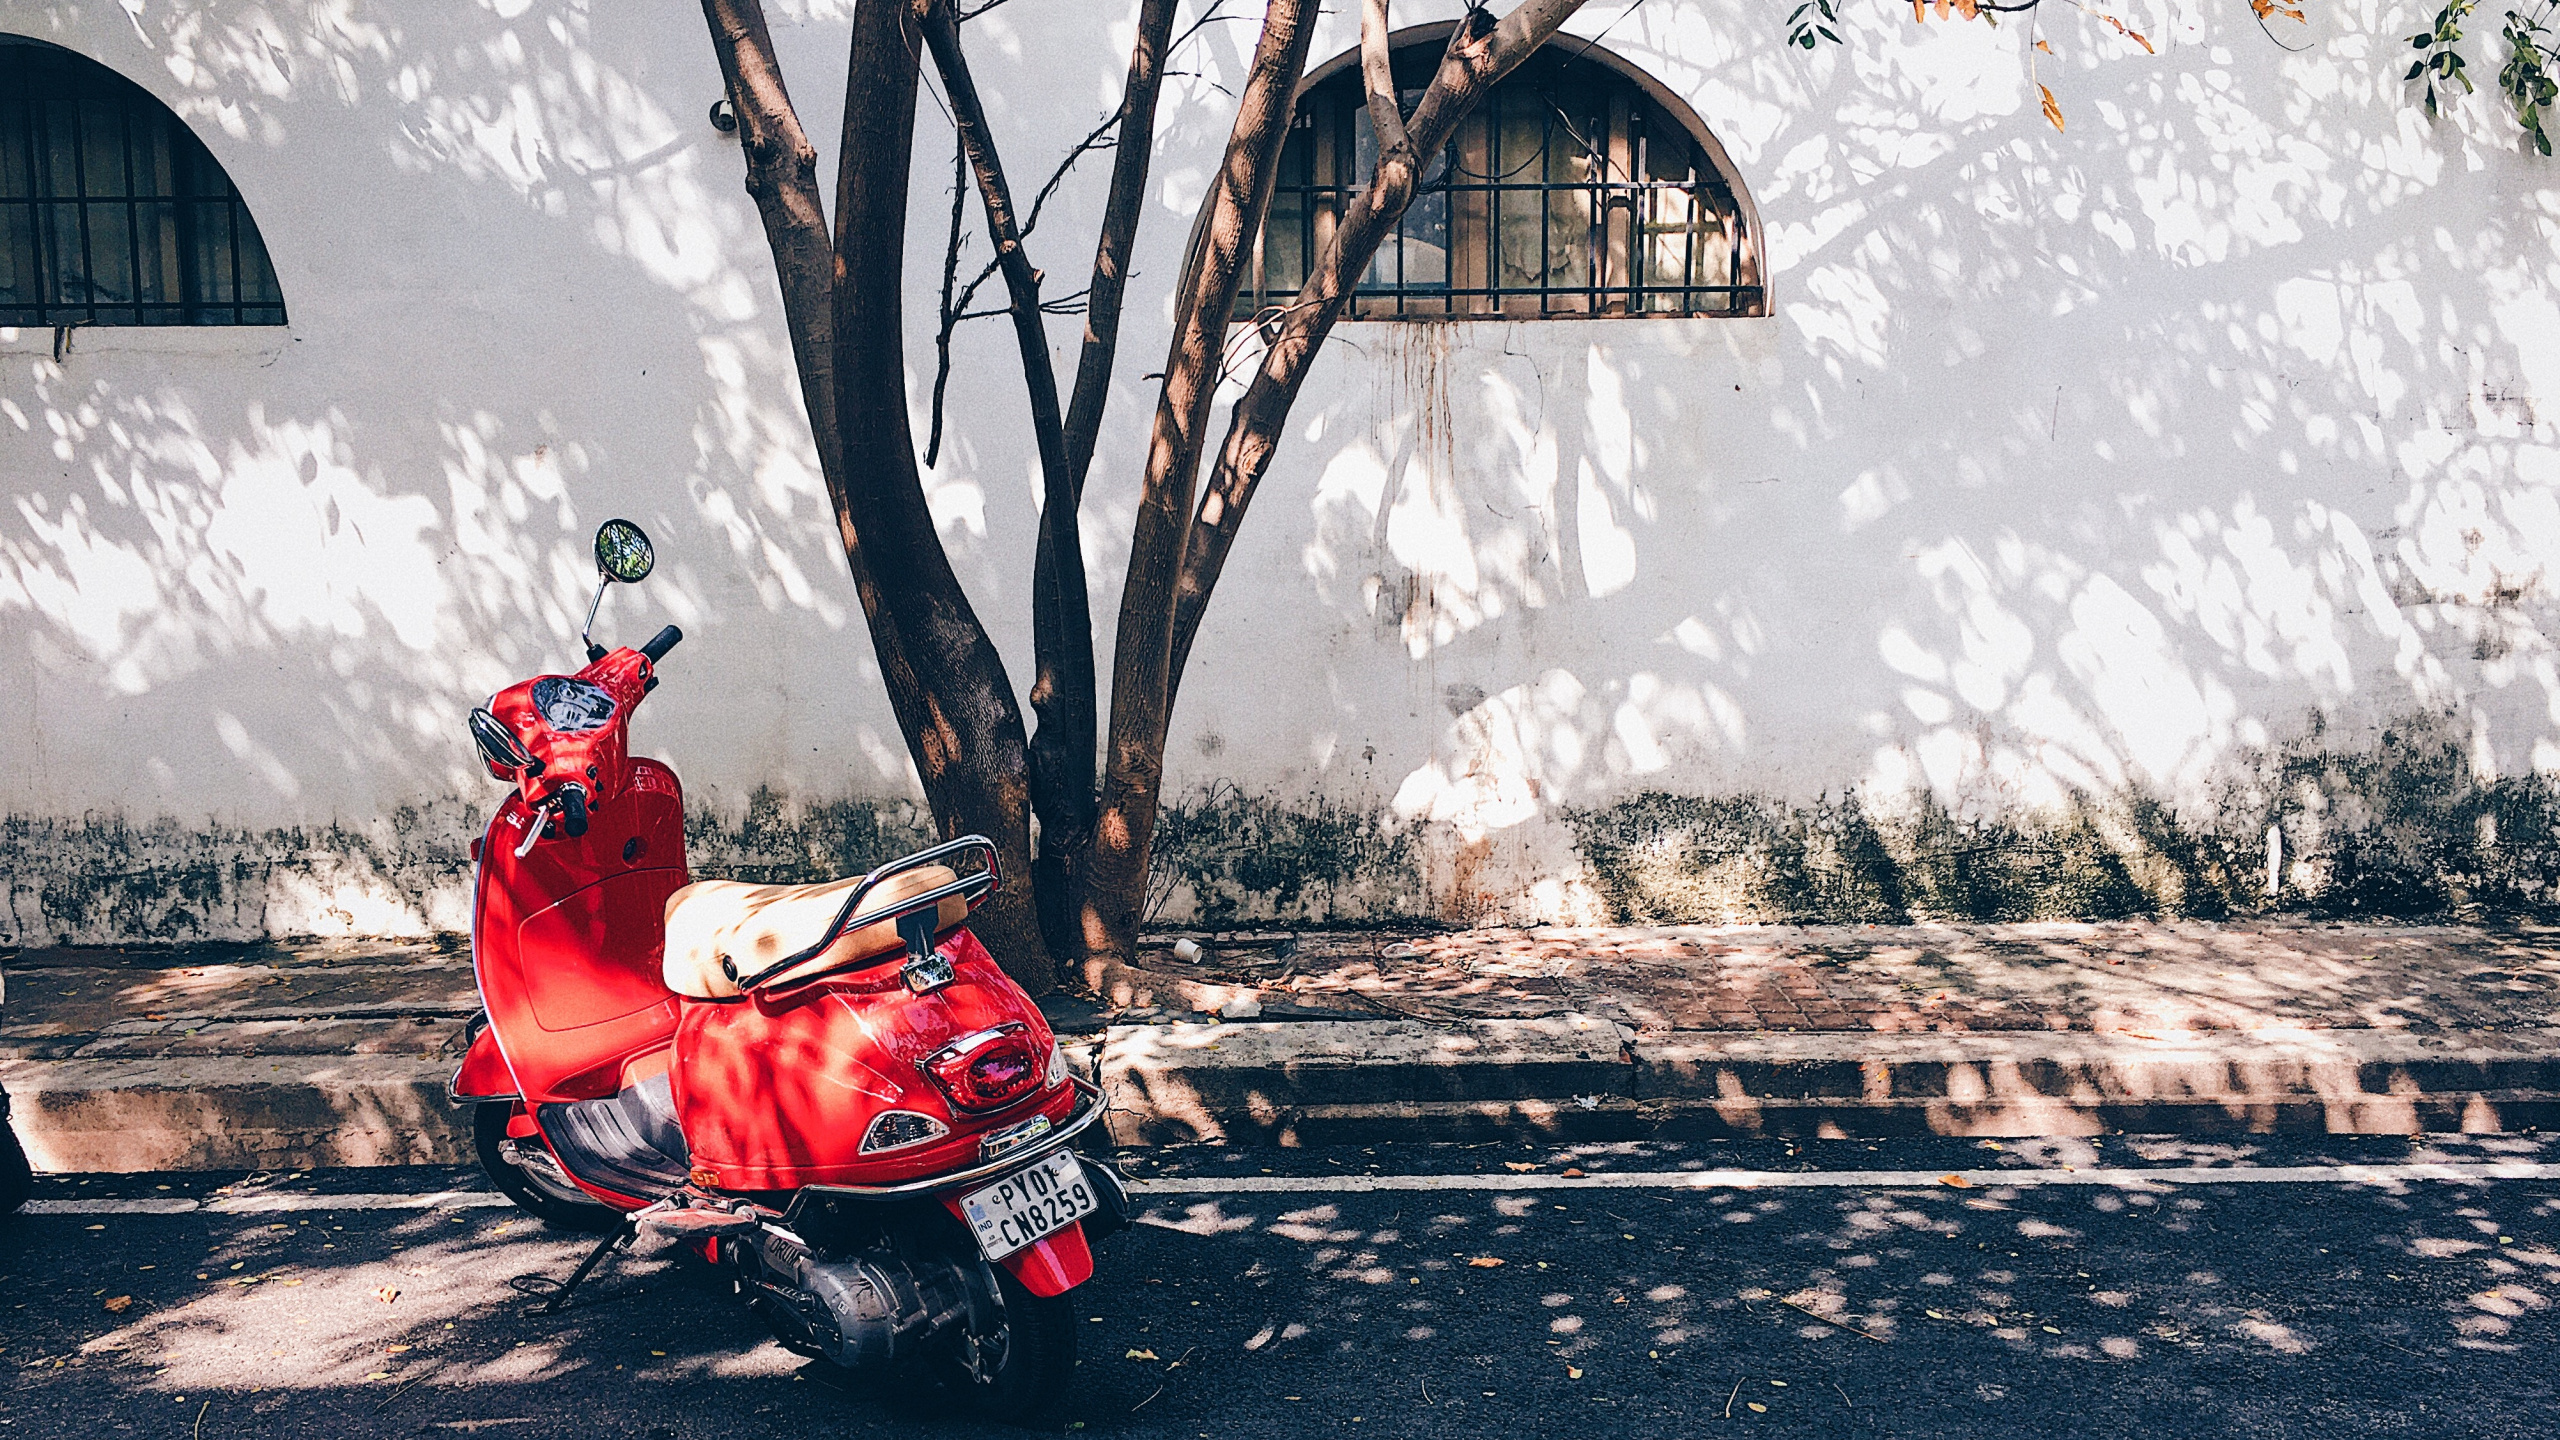 滑板车, 轻便摩托车, 胡蜂, 红色的, 天空 壁纸 2560x1440 允许